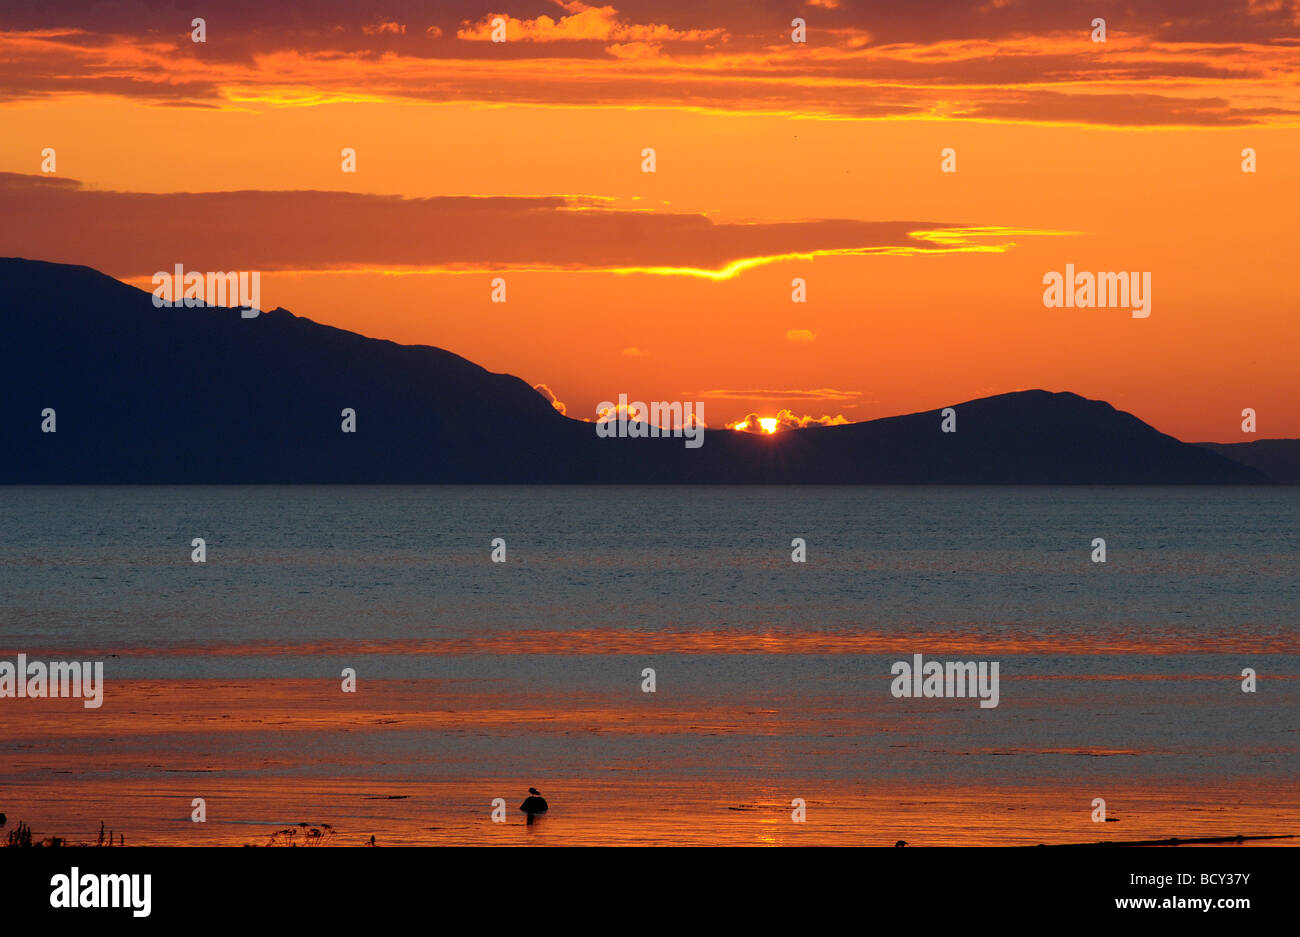 Le soleil se couche derrière l'île d'Arran, à la recherche de la côte d'Ayrshire, en Écosse. Banque D'Images